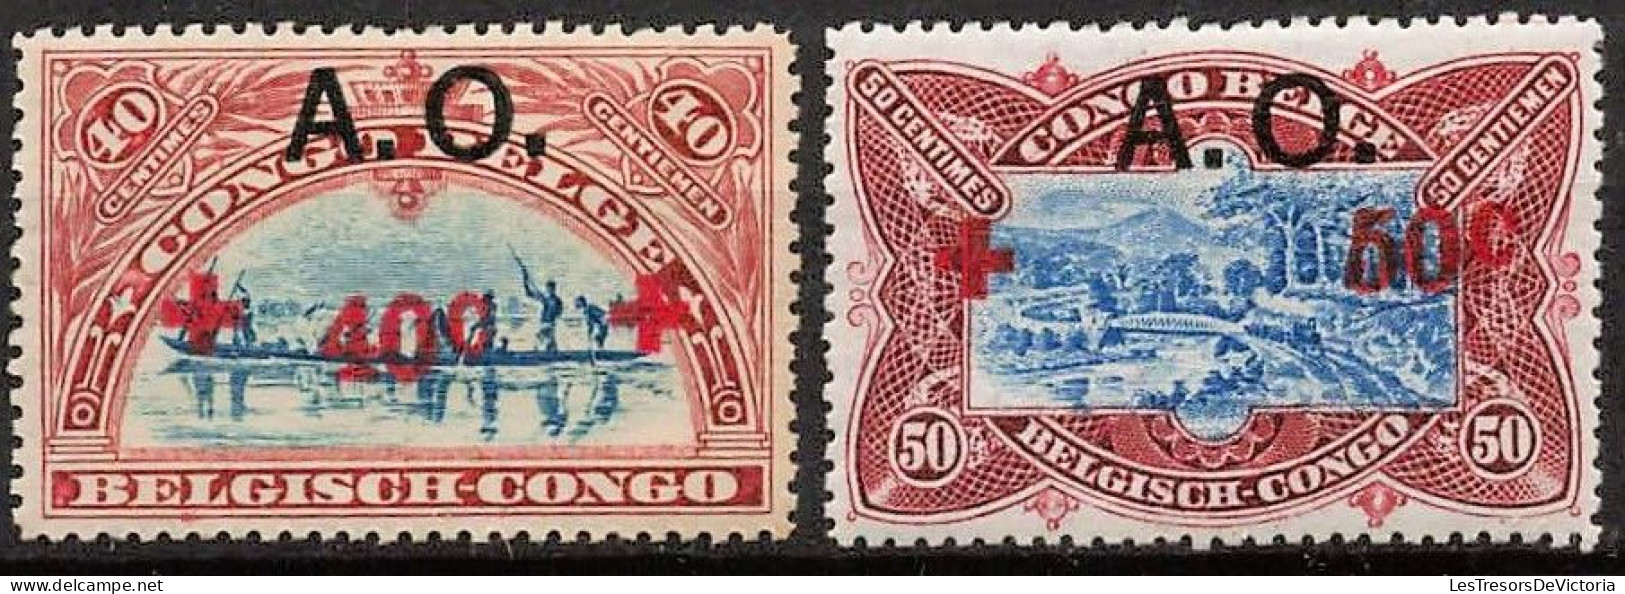 Timbres - Ruanda Urundi - 1918 - COB 36/44*  Croix Rouge - Cote 150 - Nuevos